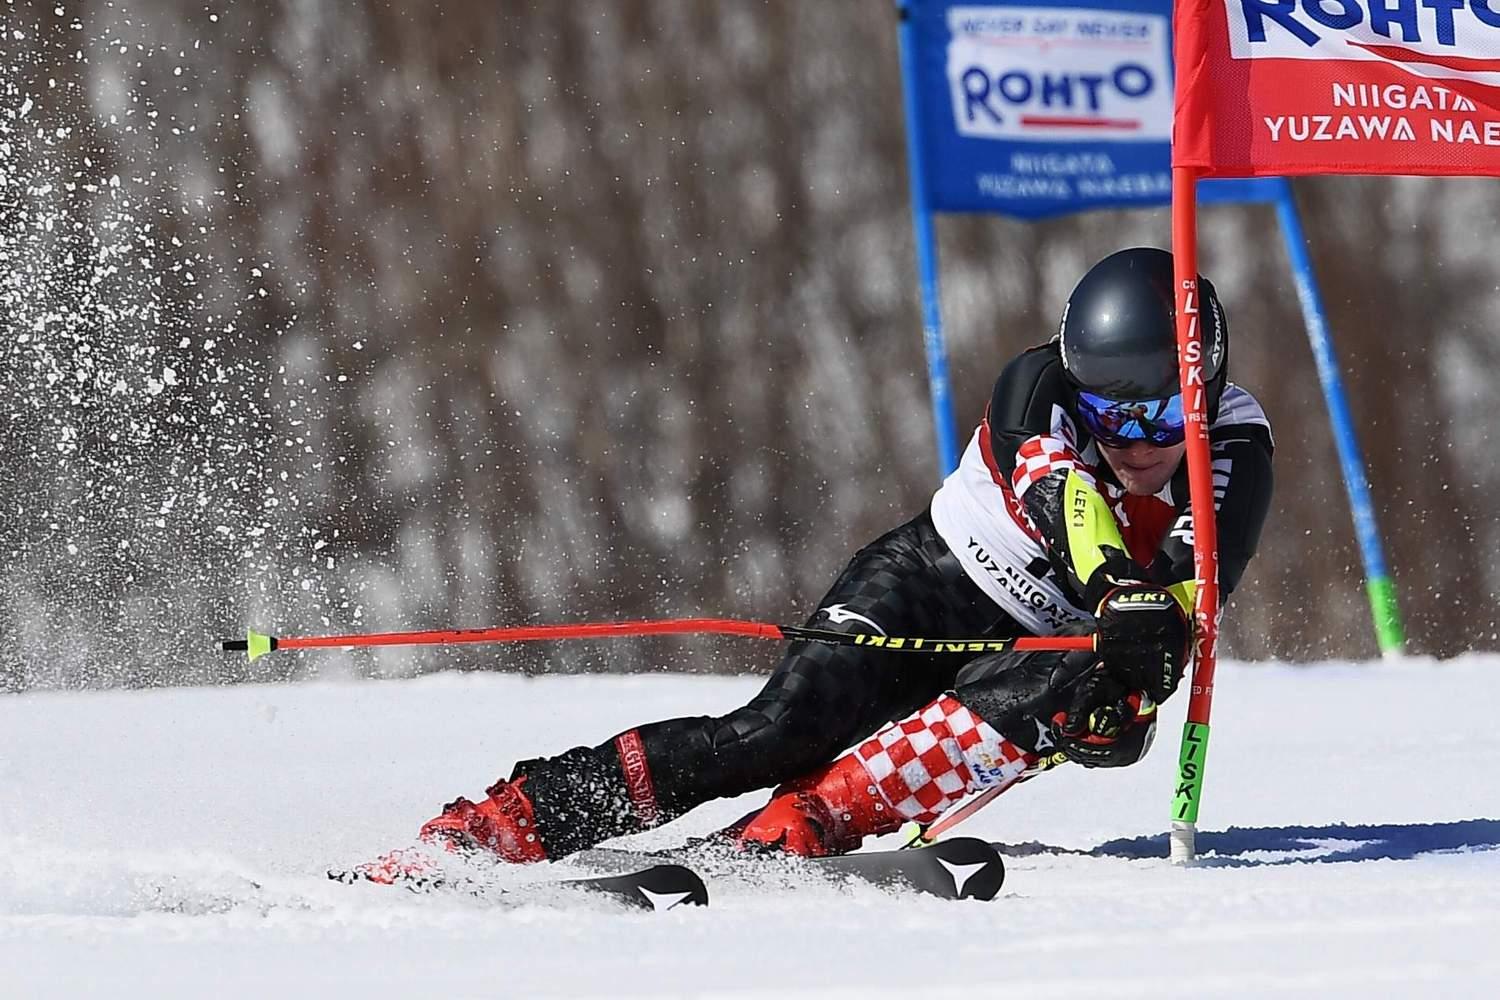 Briljirao u Japanu: Hrvatski skijaš zbrisao rivale u drugoj vožnji